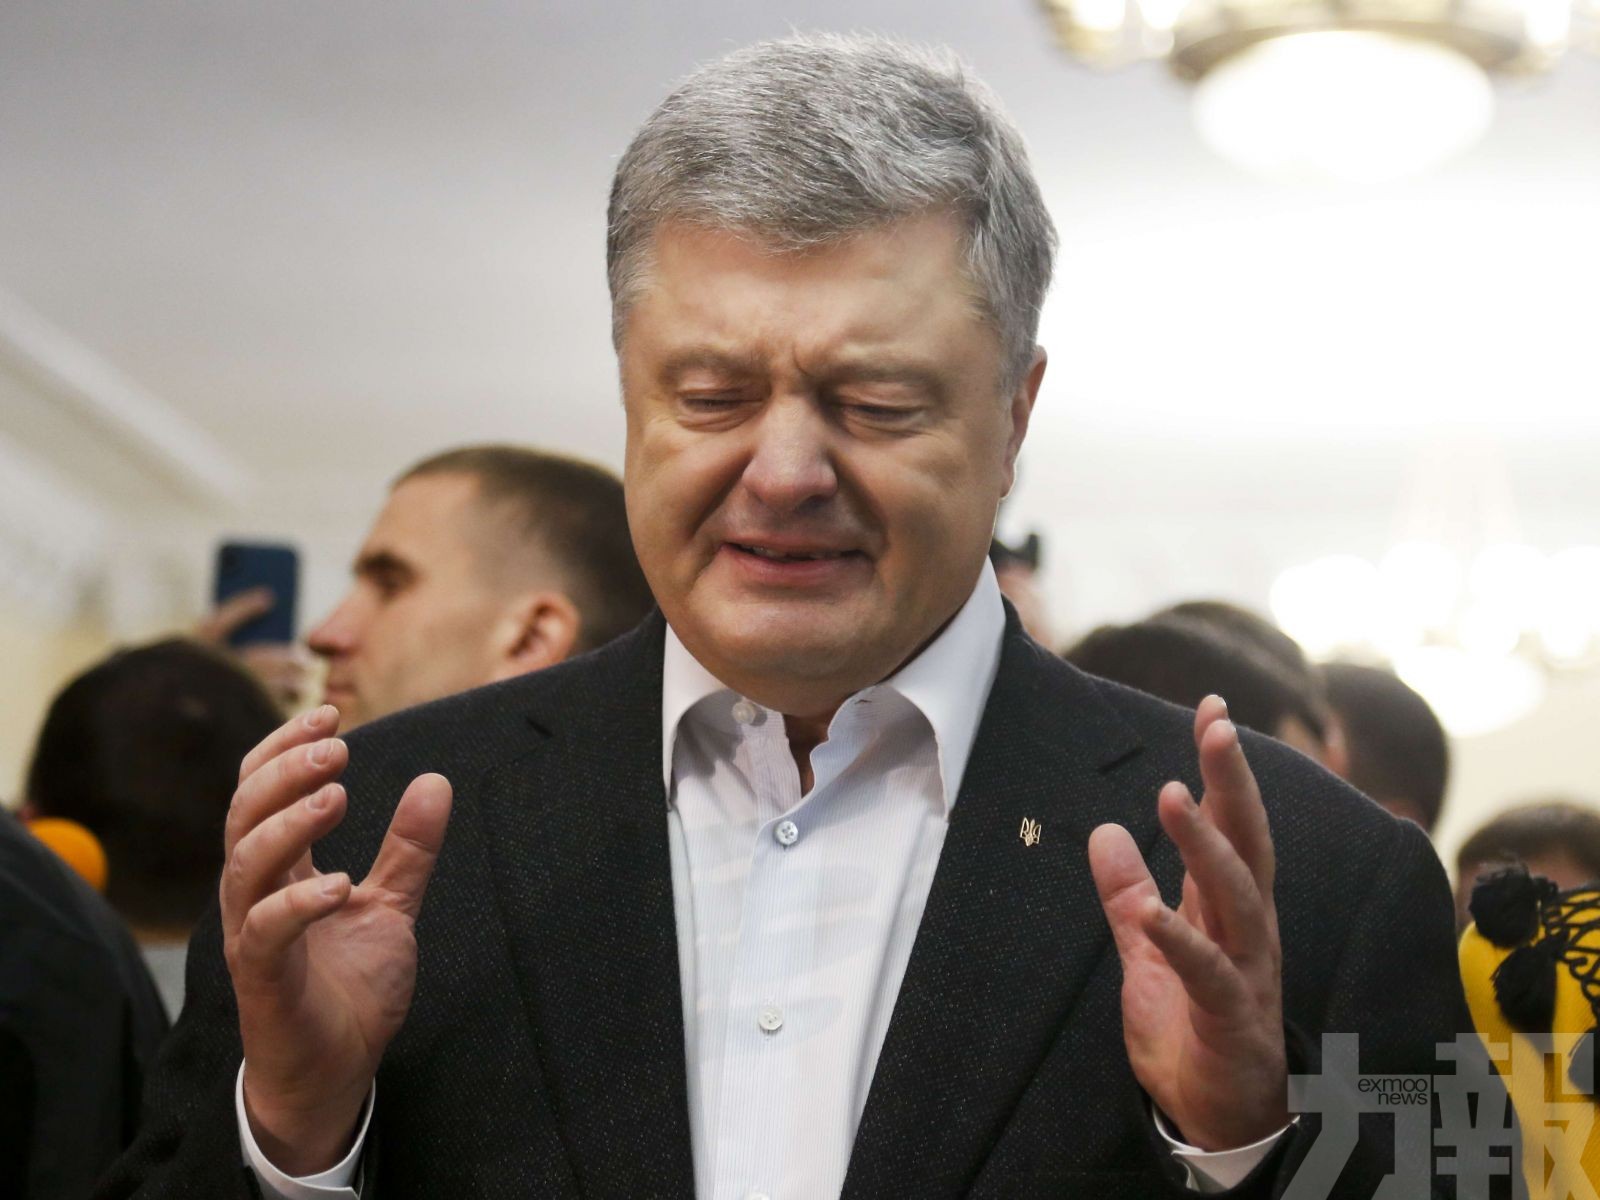 烏克蘭喜劇演員當選總統